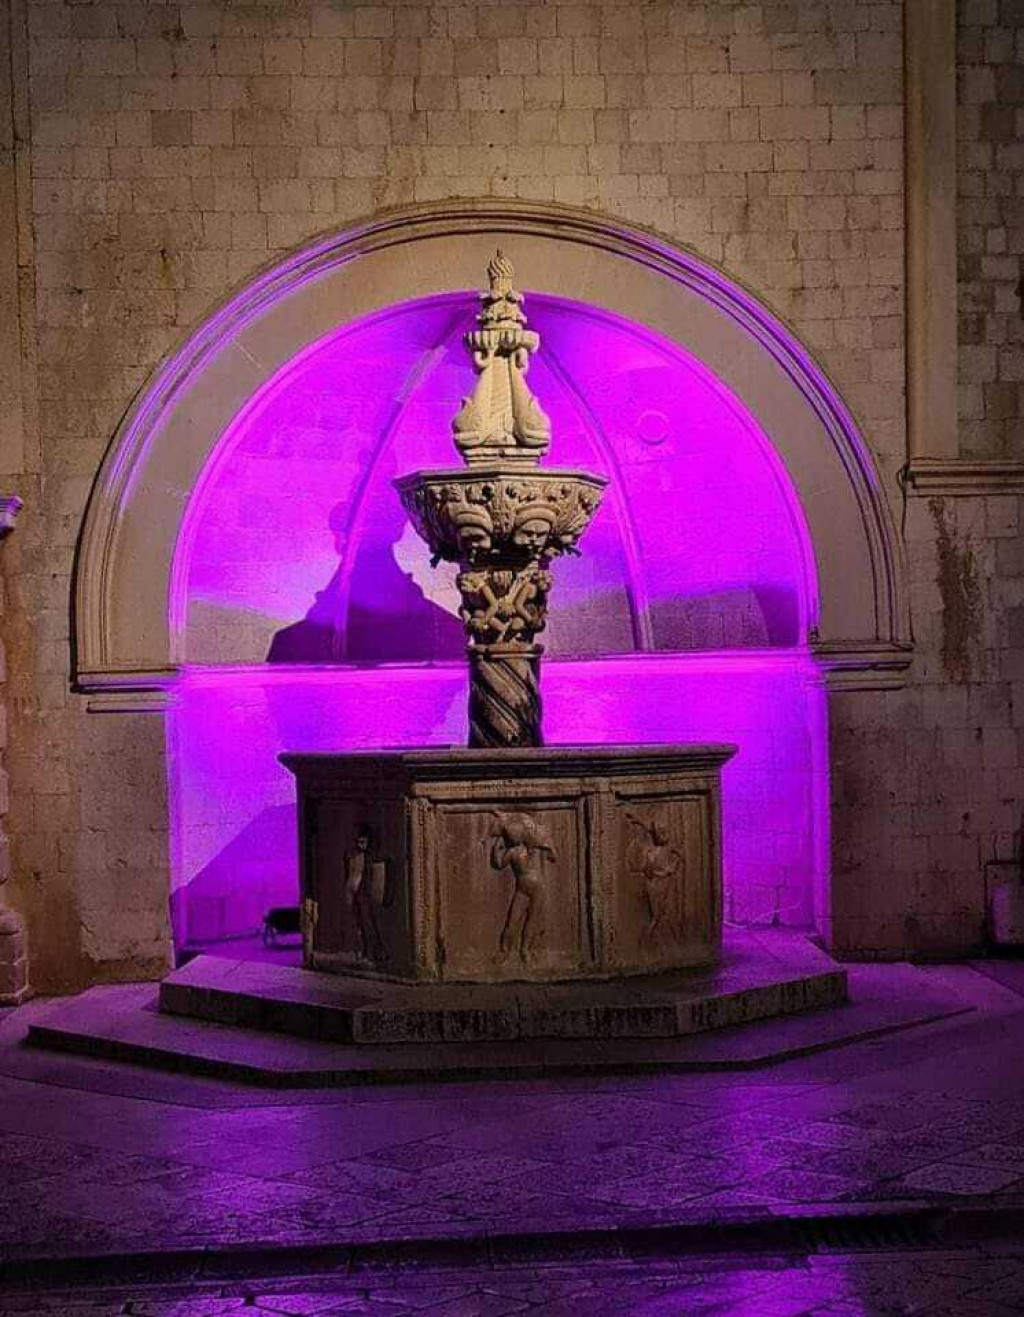 &lt;p&gt;Mala Onofrijeva fontana osvijetljena ljubičastim svjetlom&lt;/p&gt;